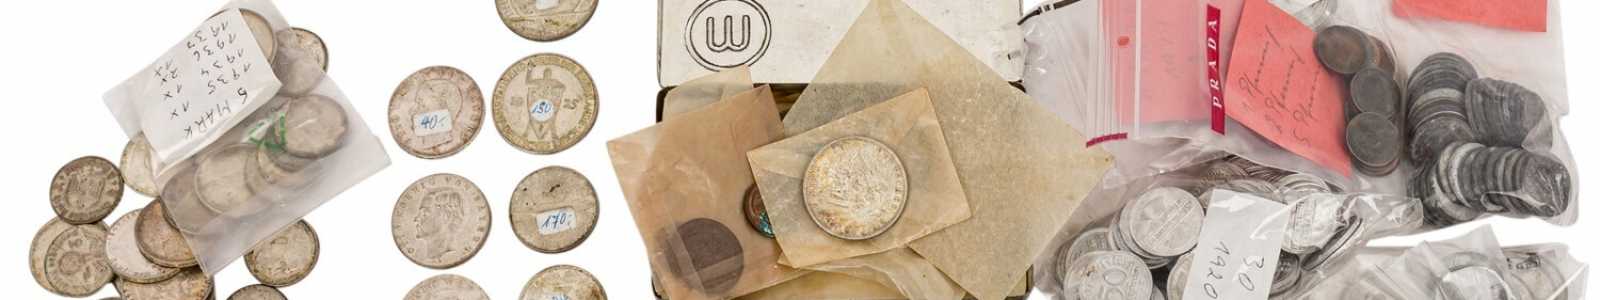 Монеты, медали, почтовые марки, исторические предметы